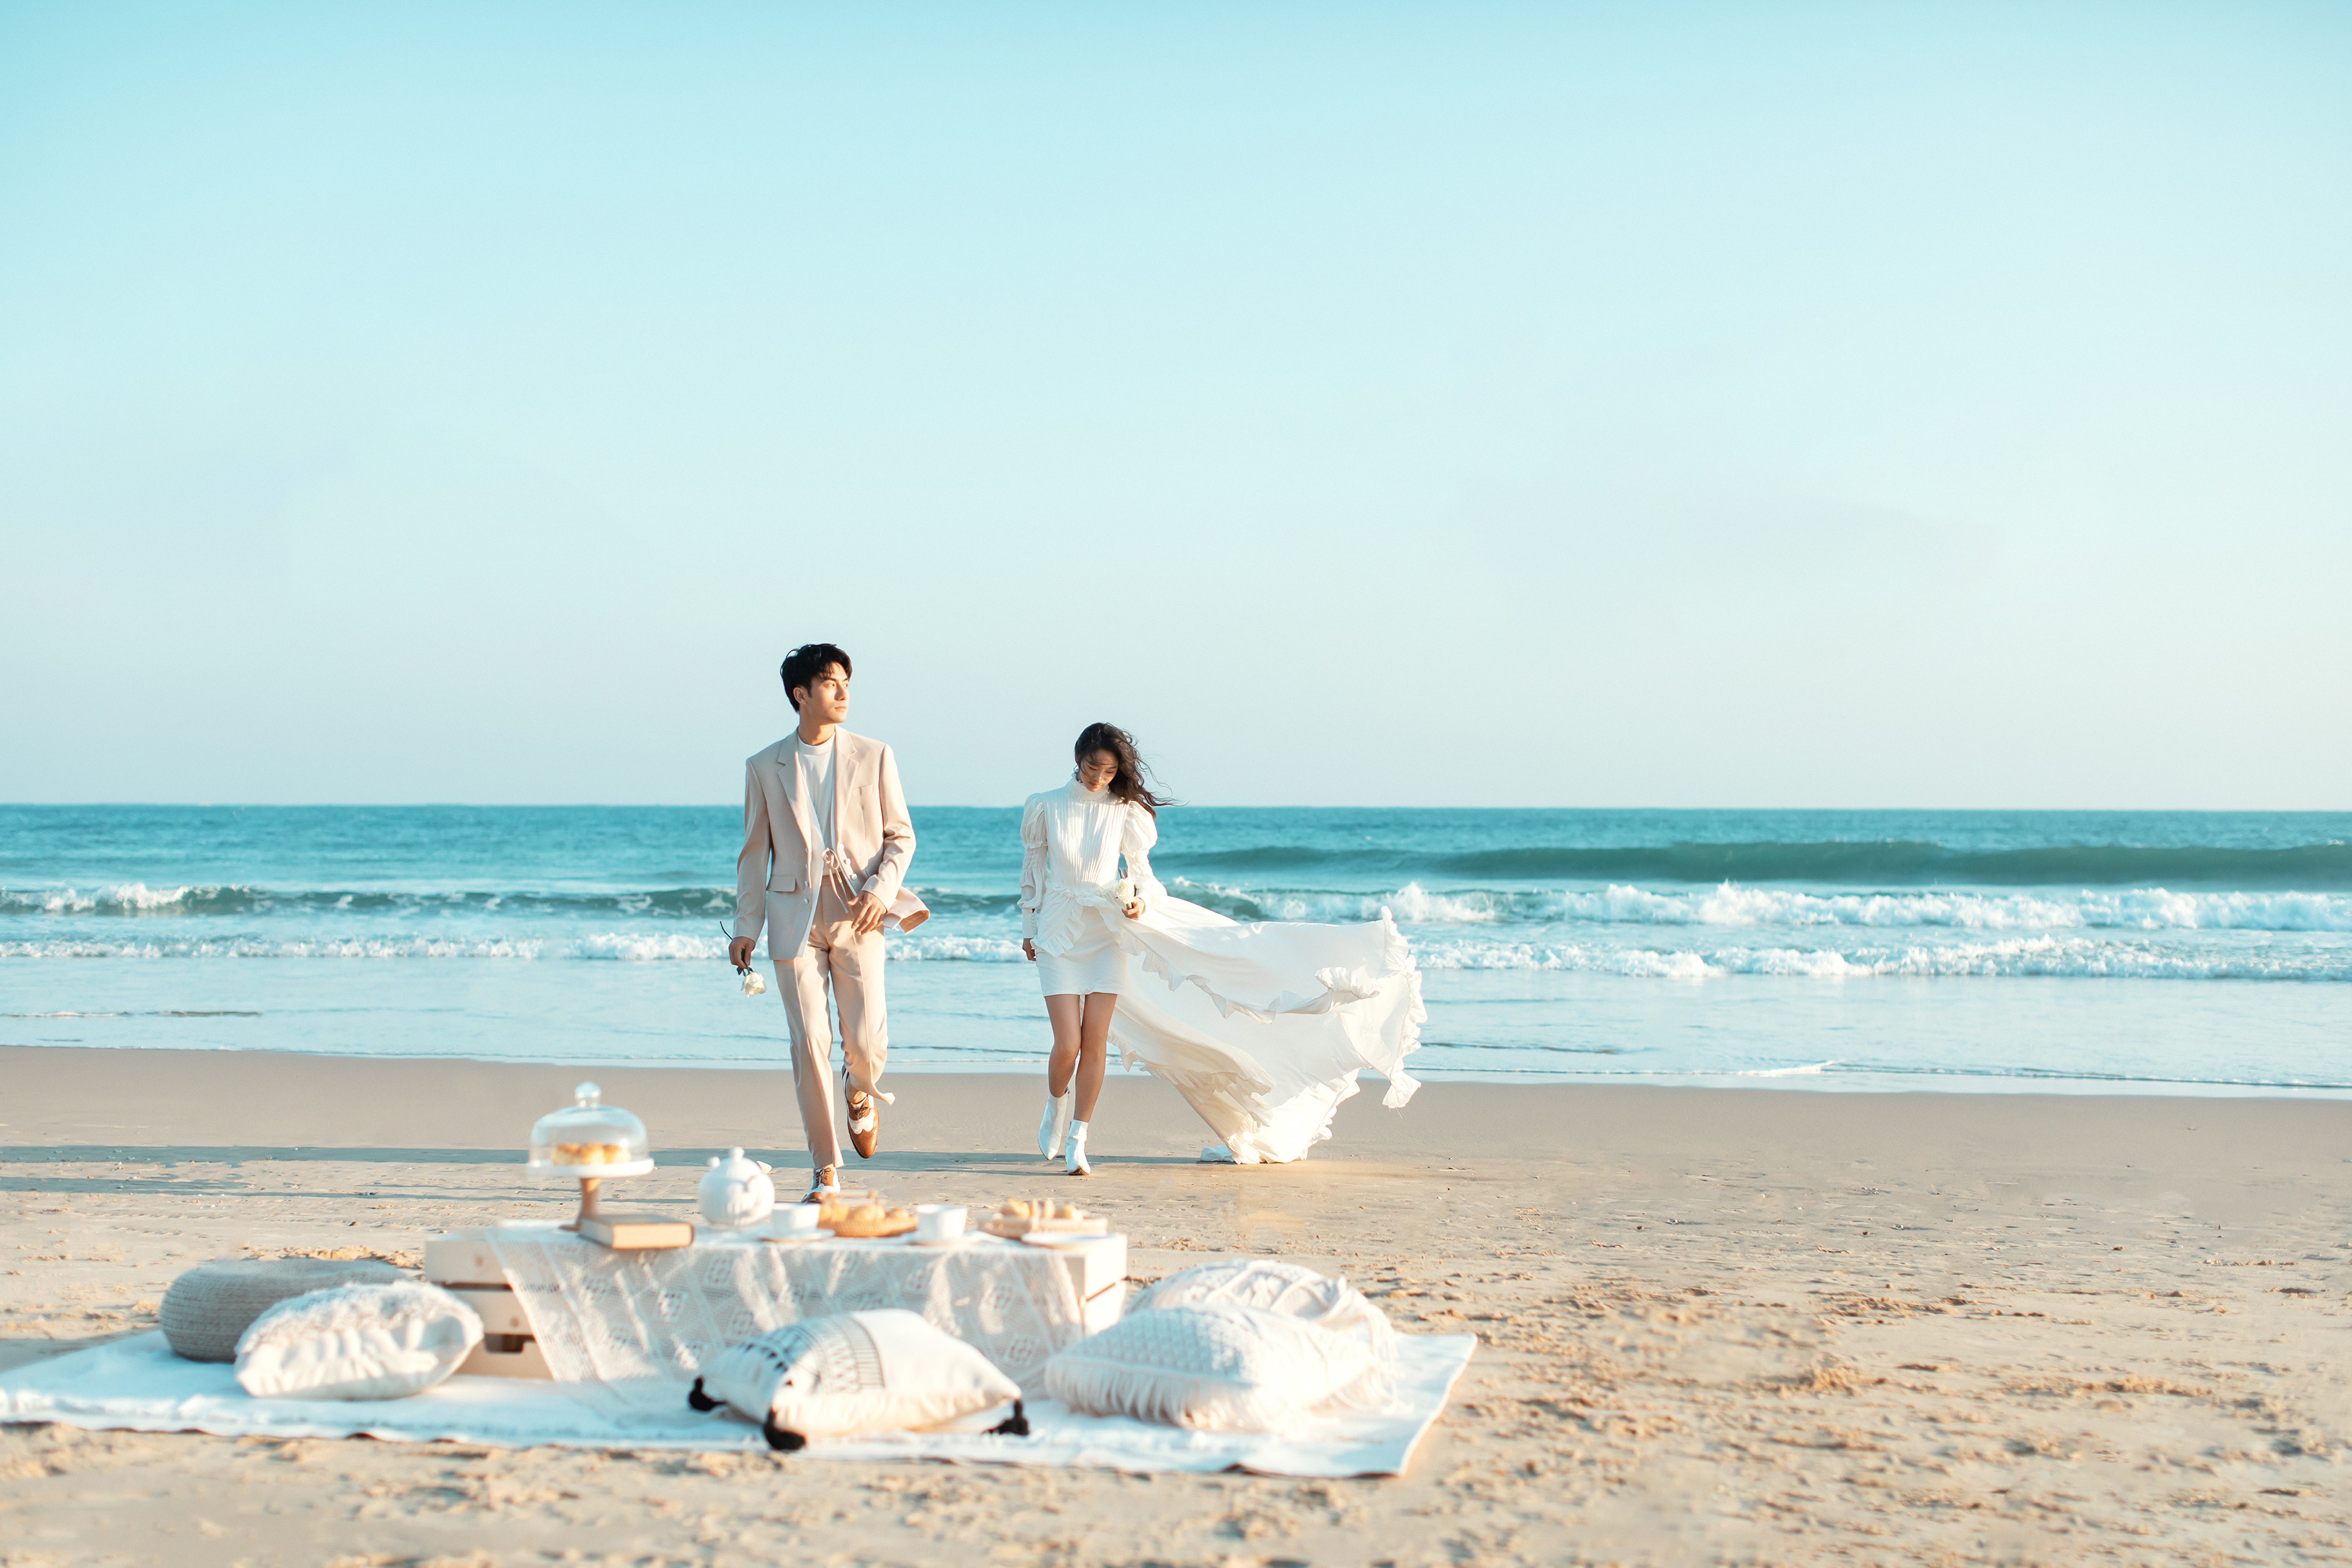 【新品上线】高端定制婚纱摄影-玫瑰海岸